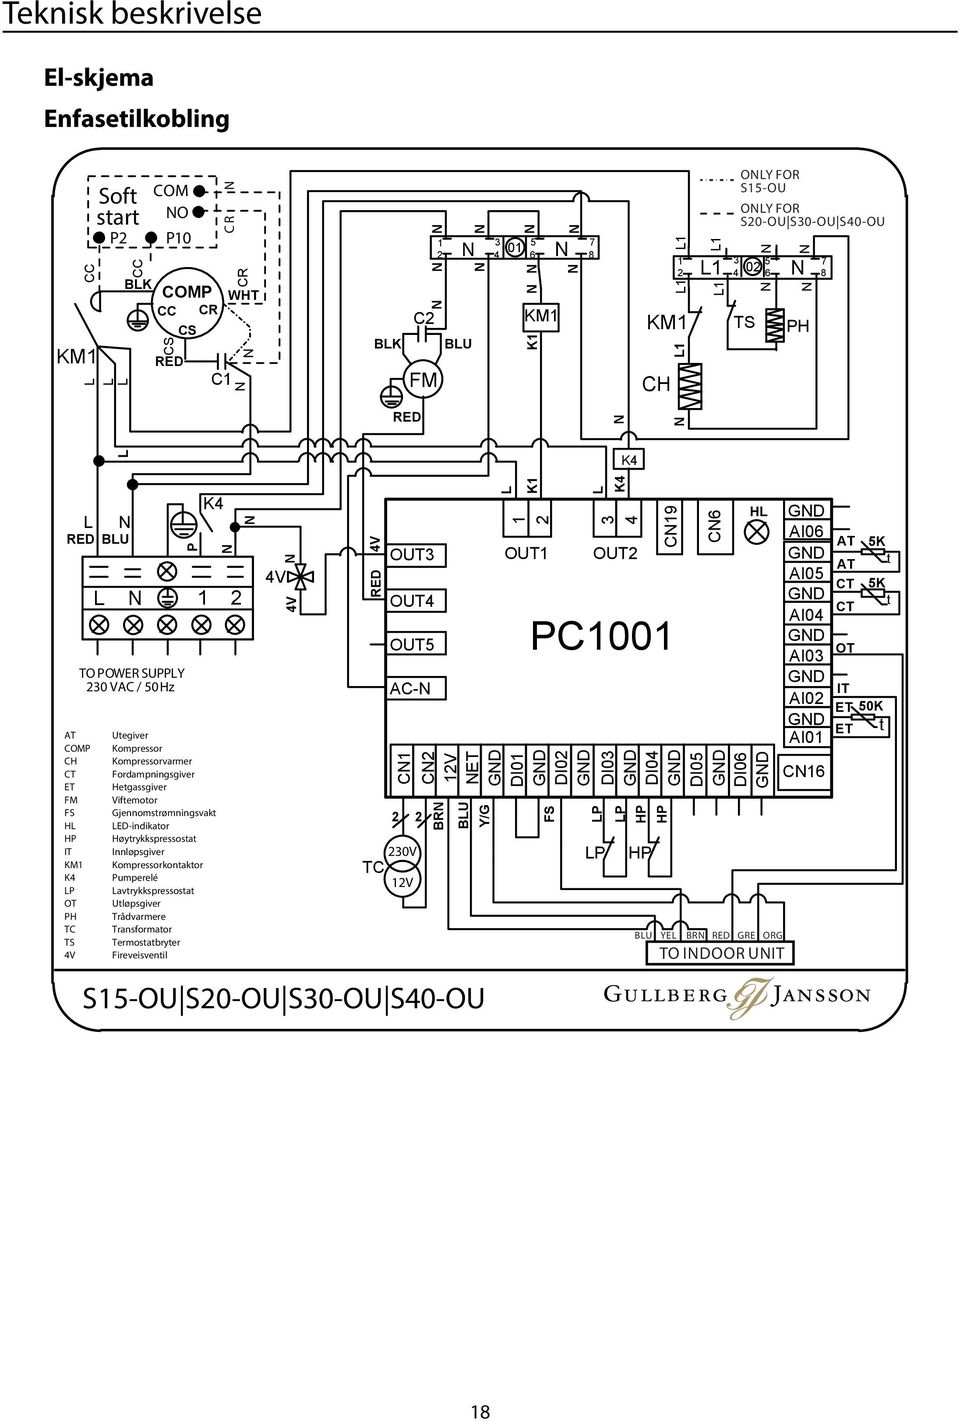 Kompressorkontaktor Pumperelé Lavtrykkspressostat Utløpsgiver Trådvarmere Transformator Termostatbryter Fireveisventil C R 4V 4V 4V RED BLK RED 2 2 230V TC 12V C2 FM OUT3 OUT4 OUT5 AC- BLU 1 3 01 2 4